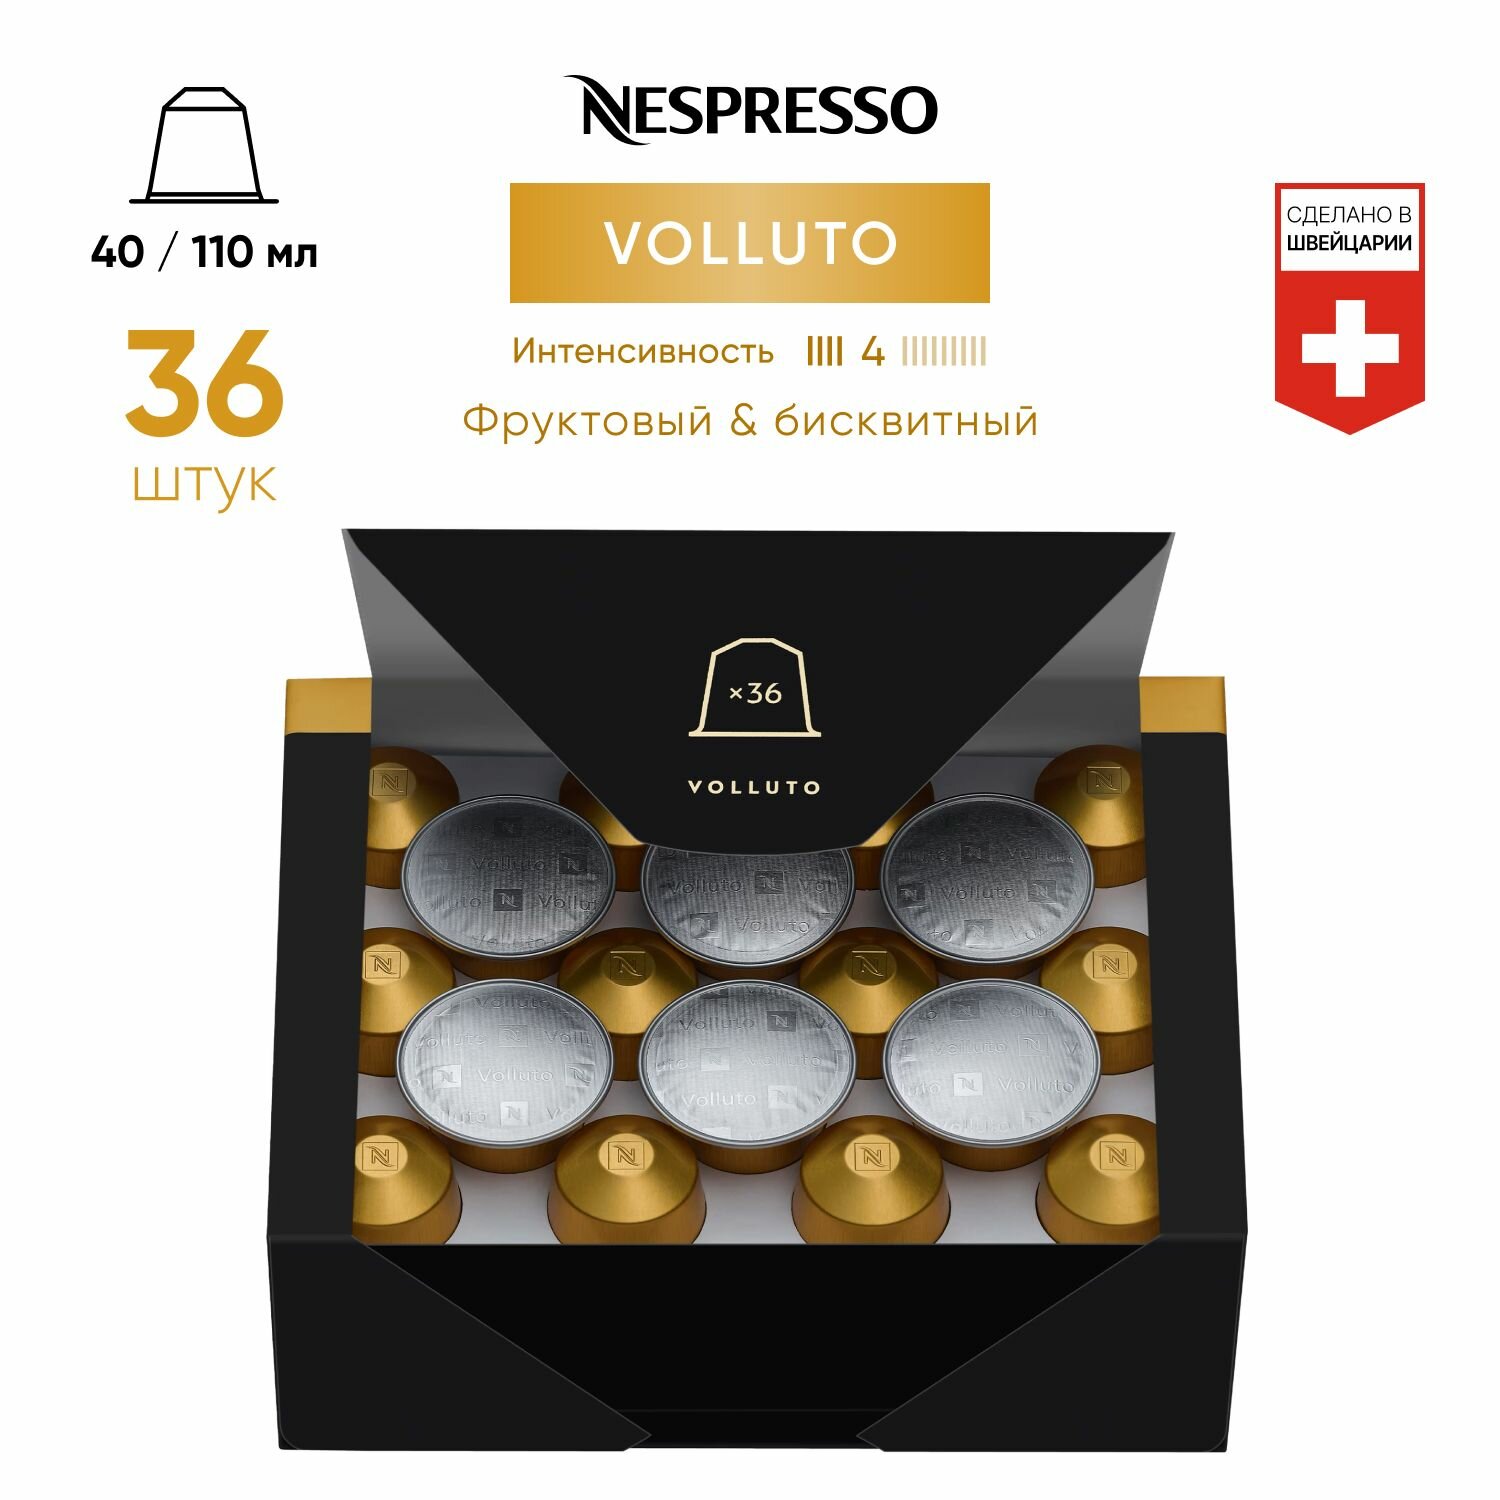 Volluto - кофе в капсулах Nespresso Original, 1 упаковка (36 капсул) - фотография № 1